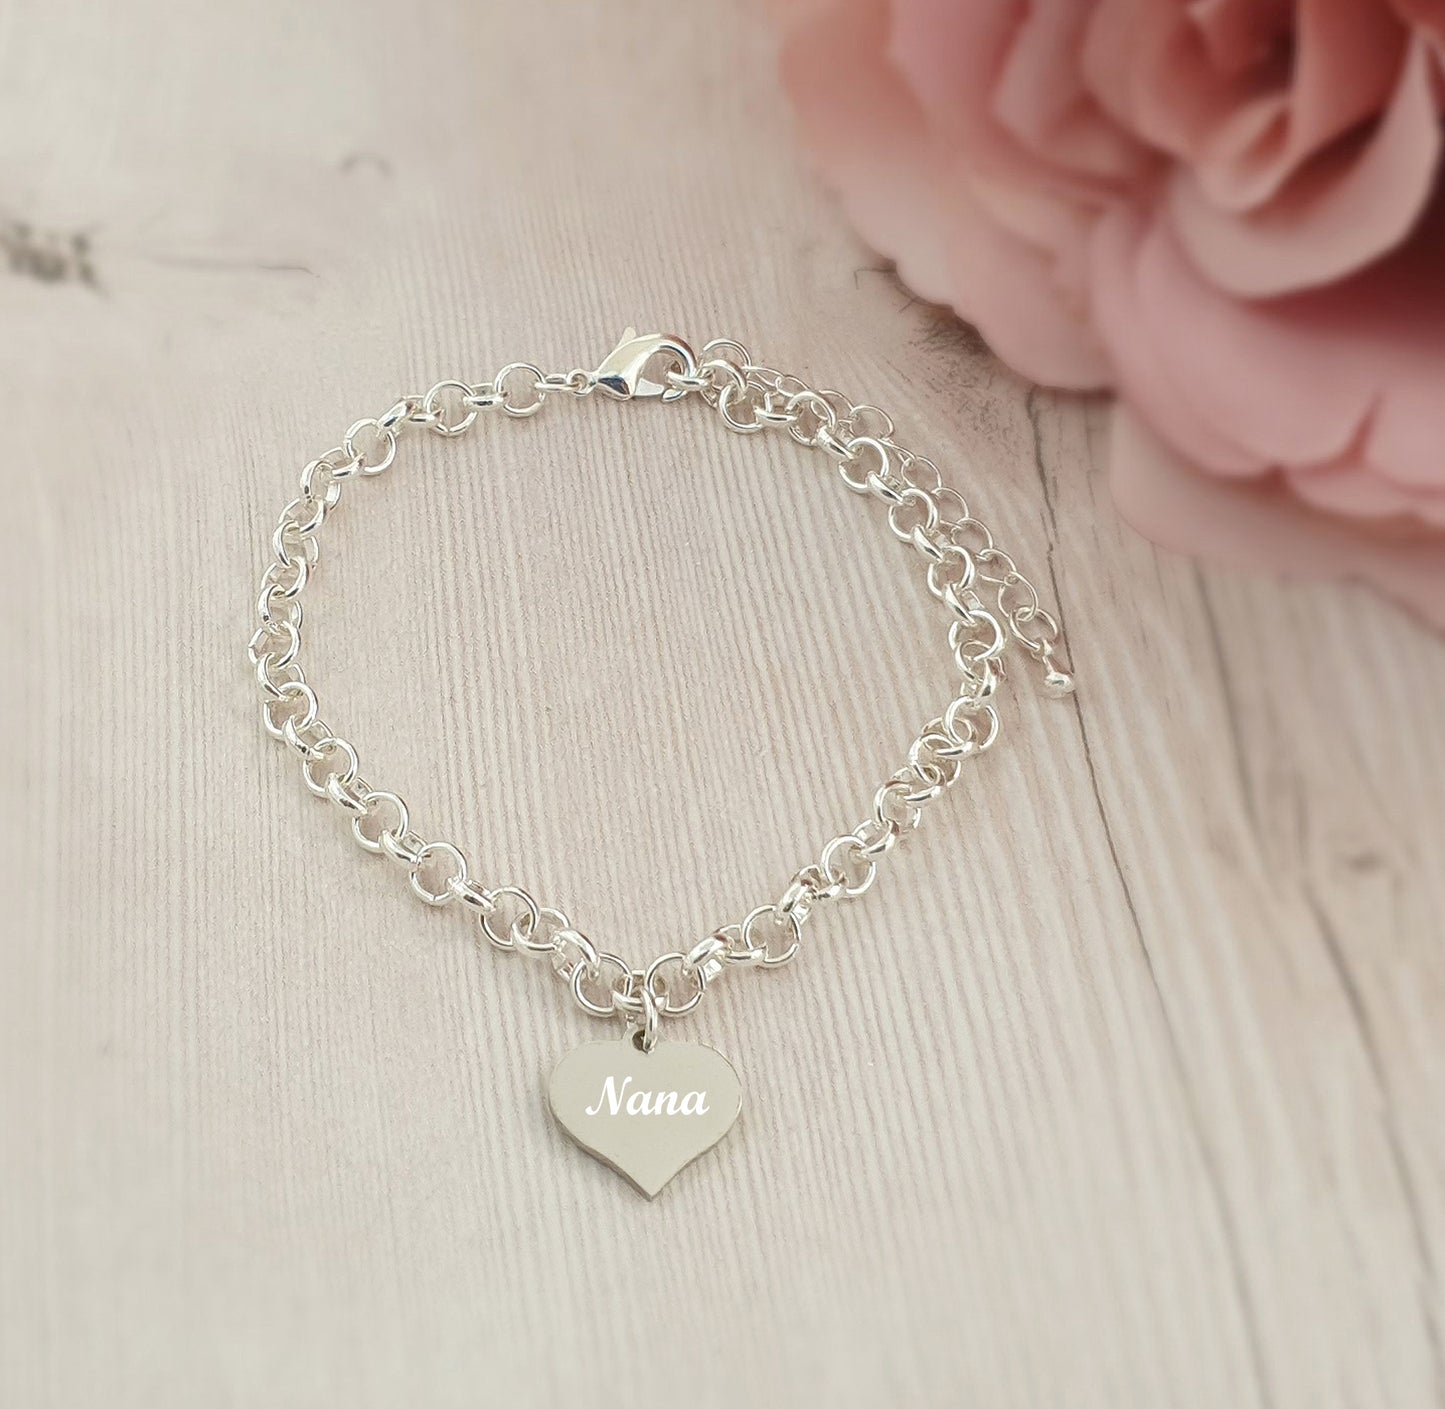 Nana Engraved Heart Charm Link Bracelet, Gift for Women